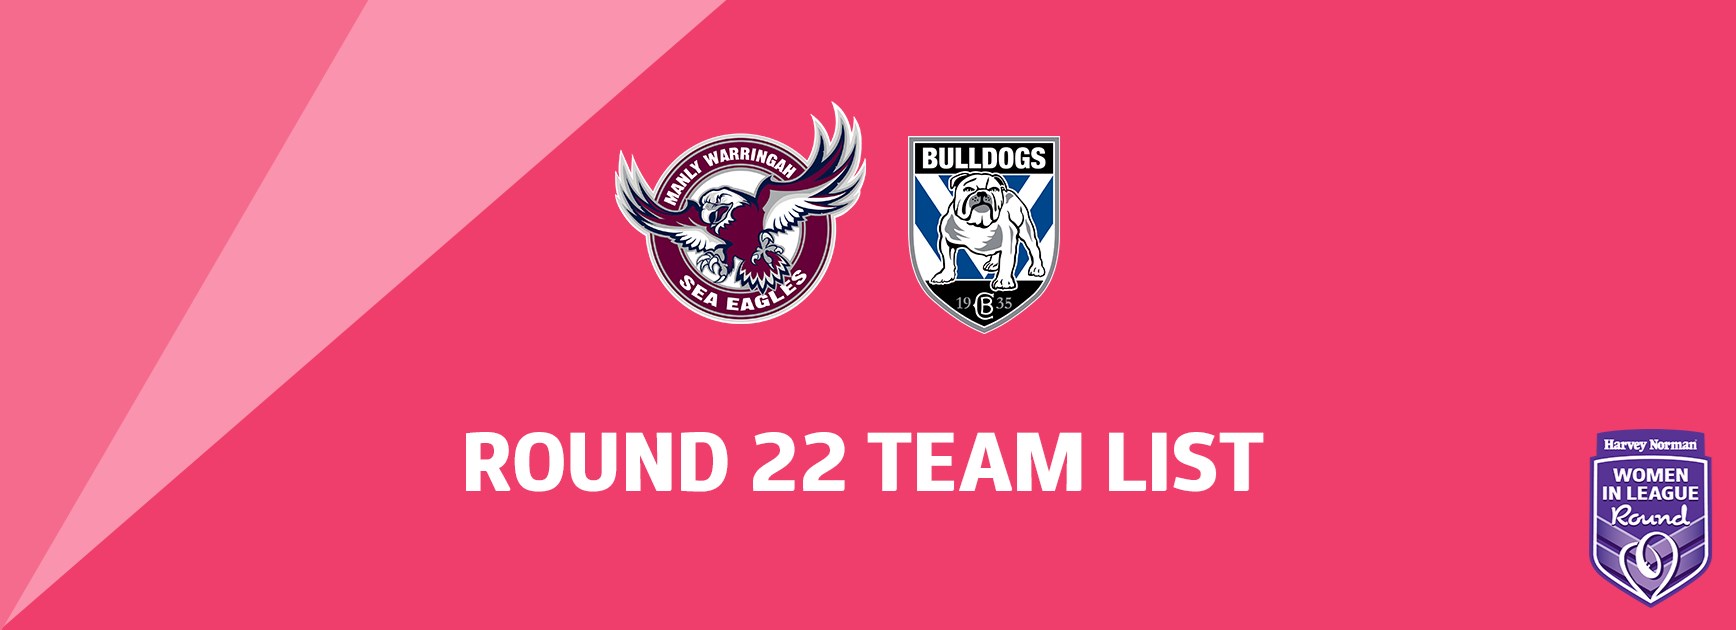 NRL Team List - Round 22